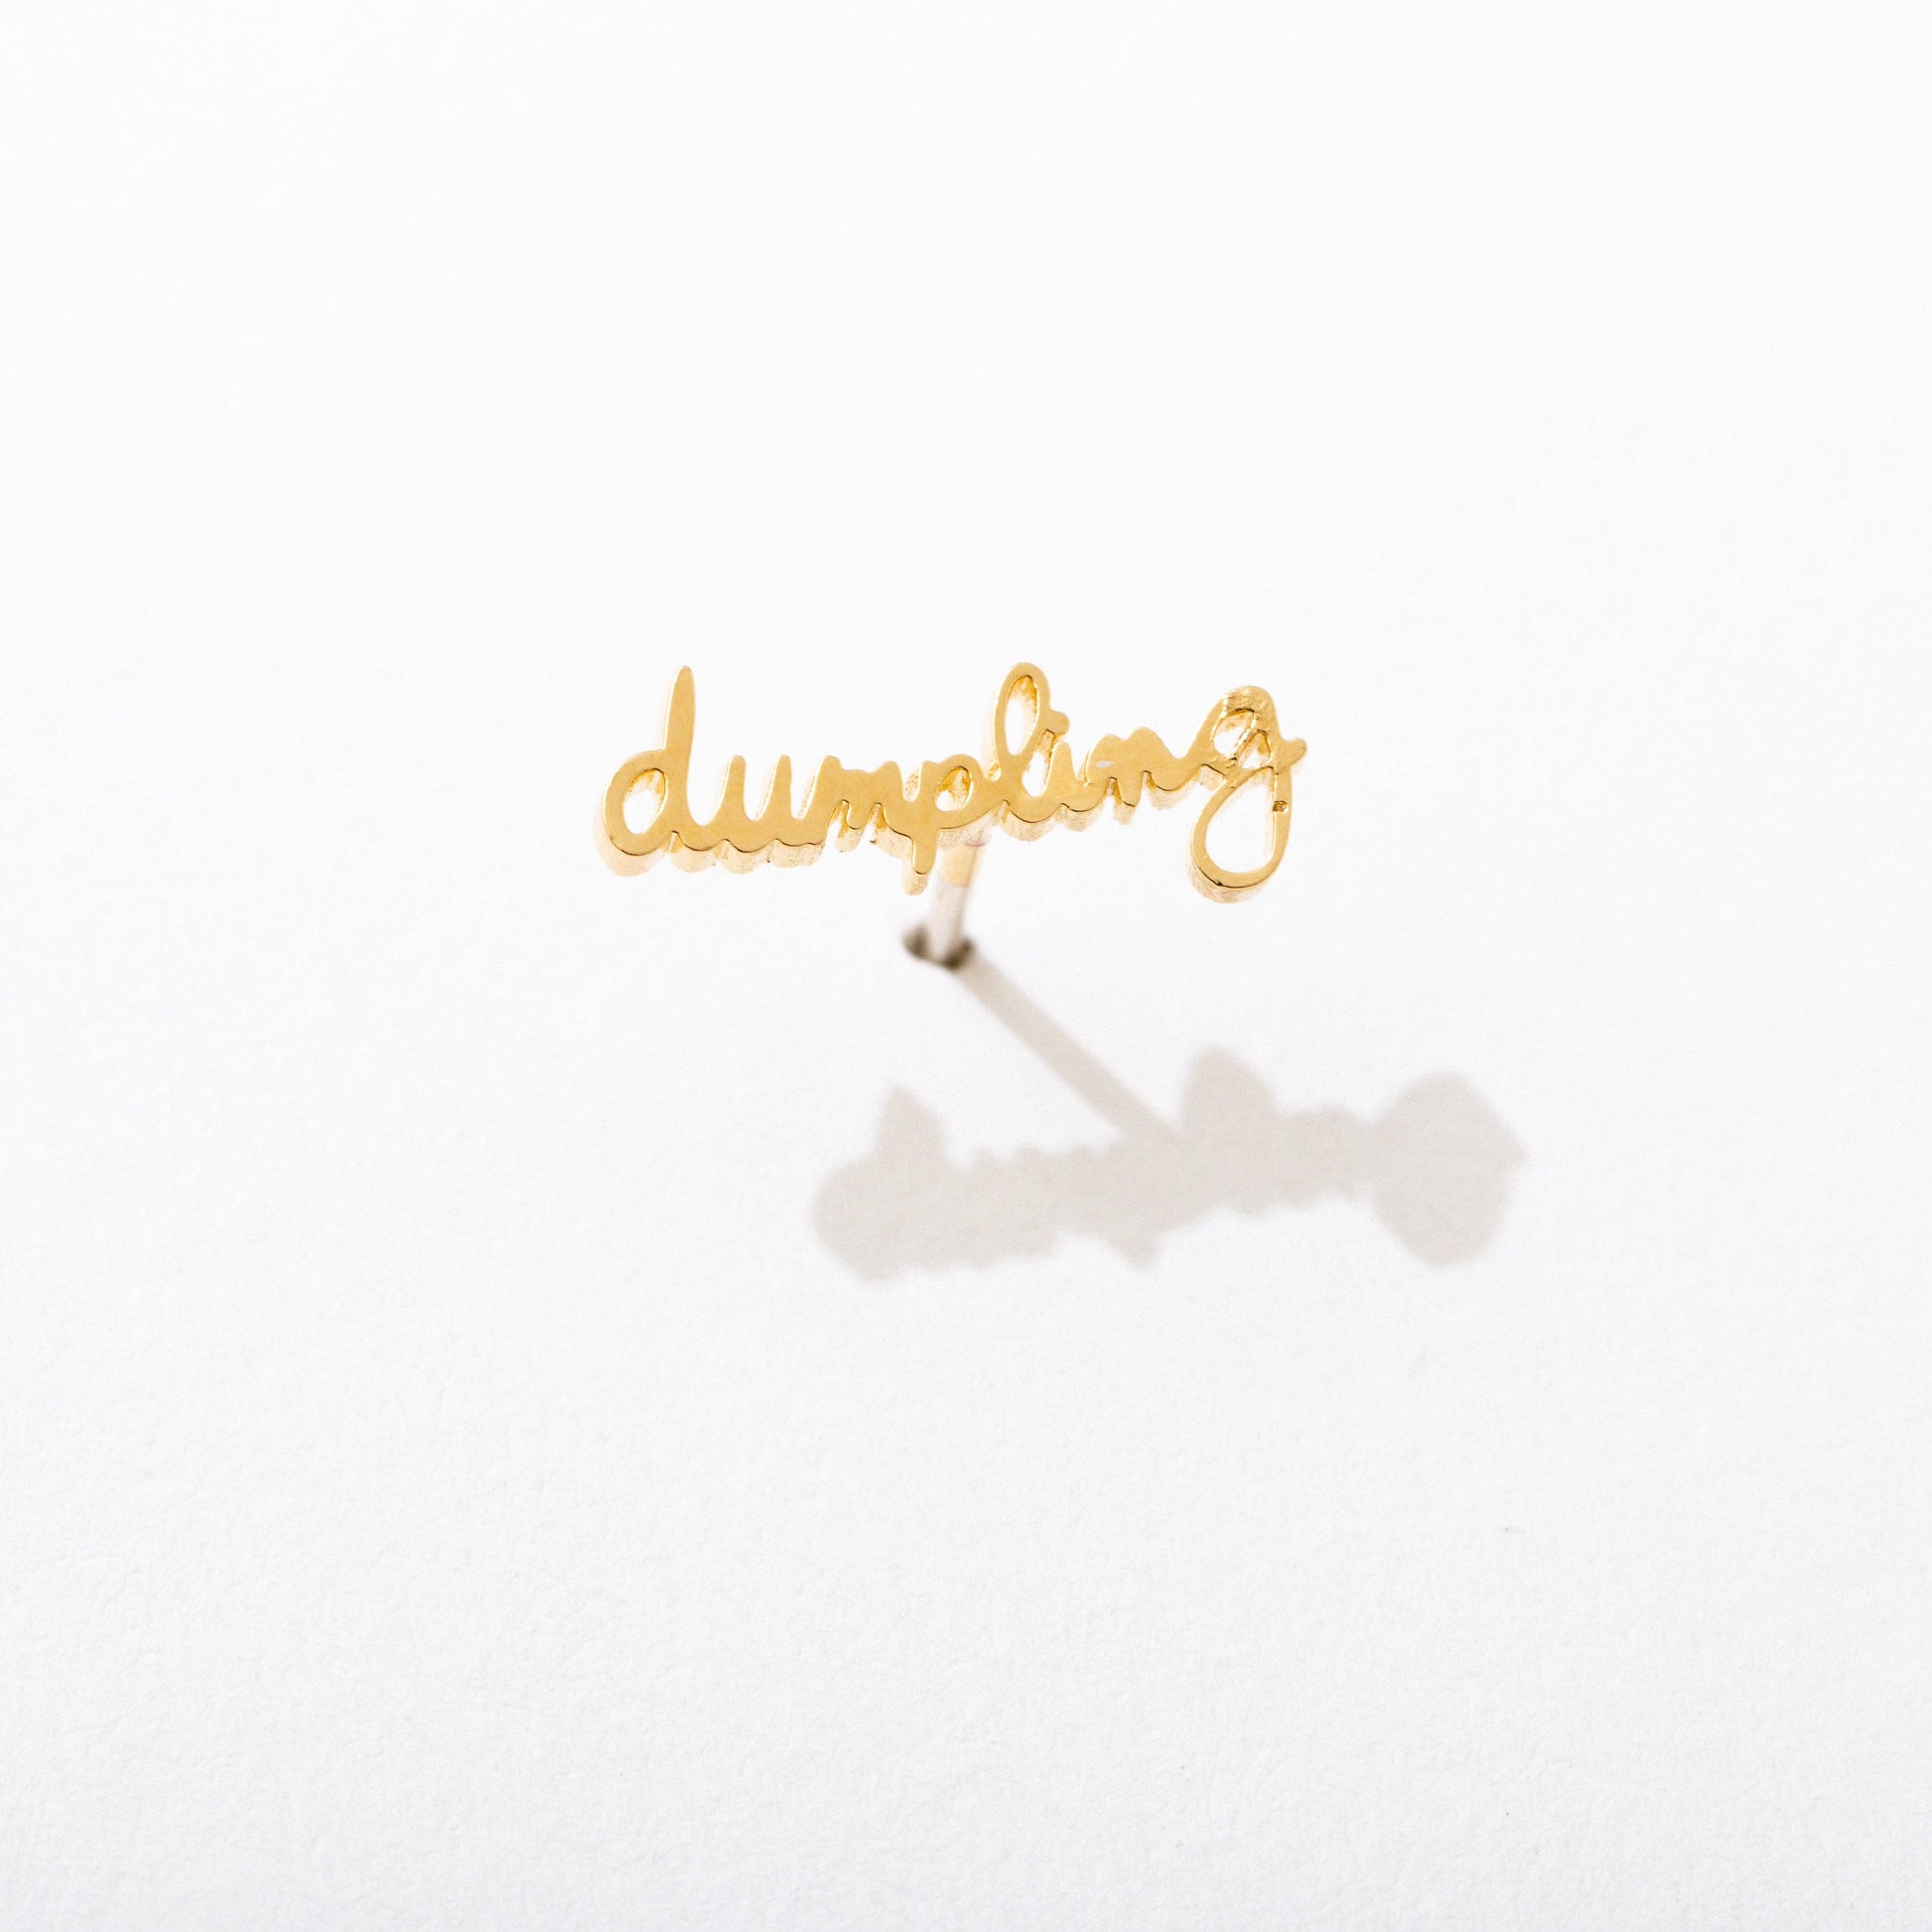 Single 14k gold plated stud earring -- reads "dumpling" in handwritten script